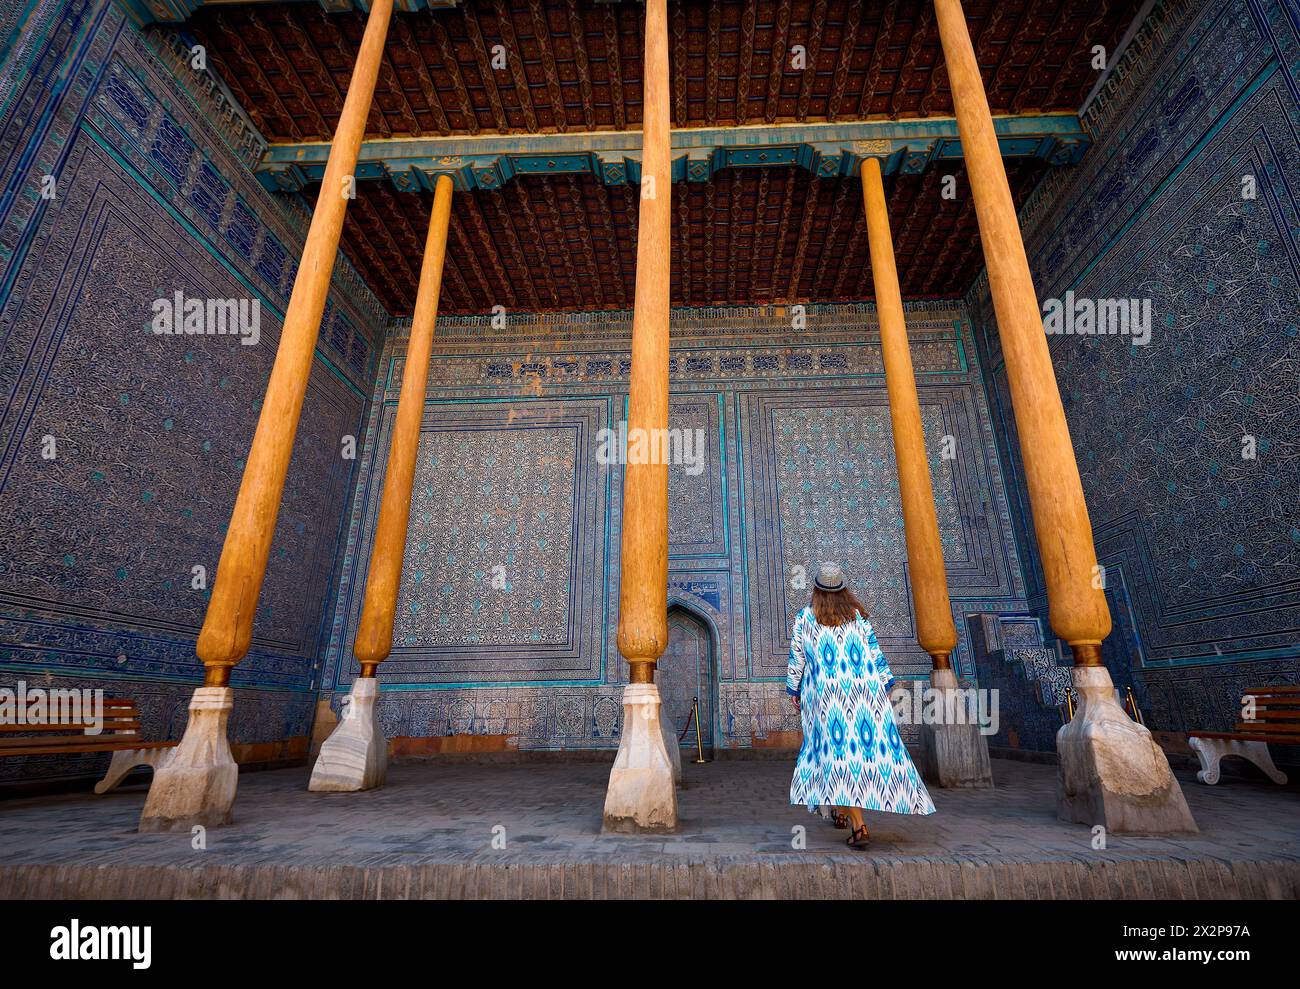 Frau Touristin in ethnischer Kleidung im Innenhof des blauen Mosaikpalastes in Tash Hauli mit Holzsäule in der antiken Stadt Chiwa in Usbekistan. Stockfoto